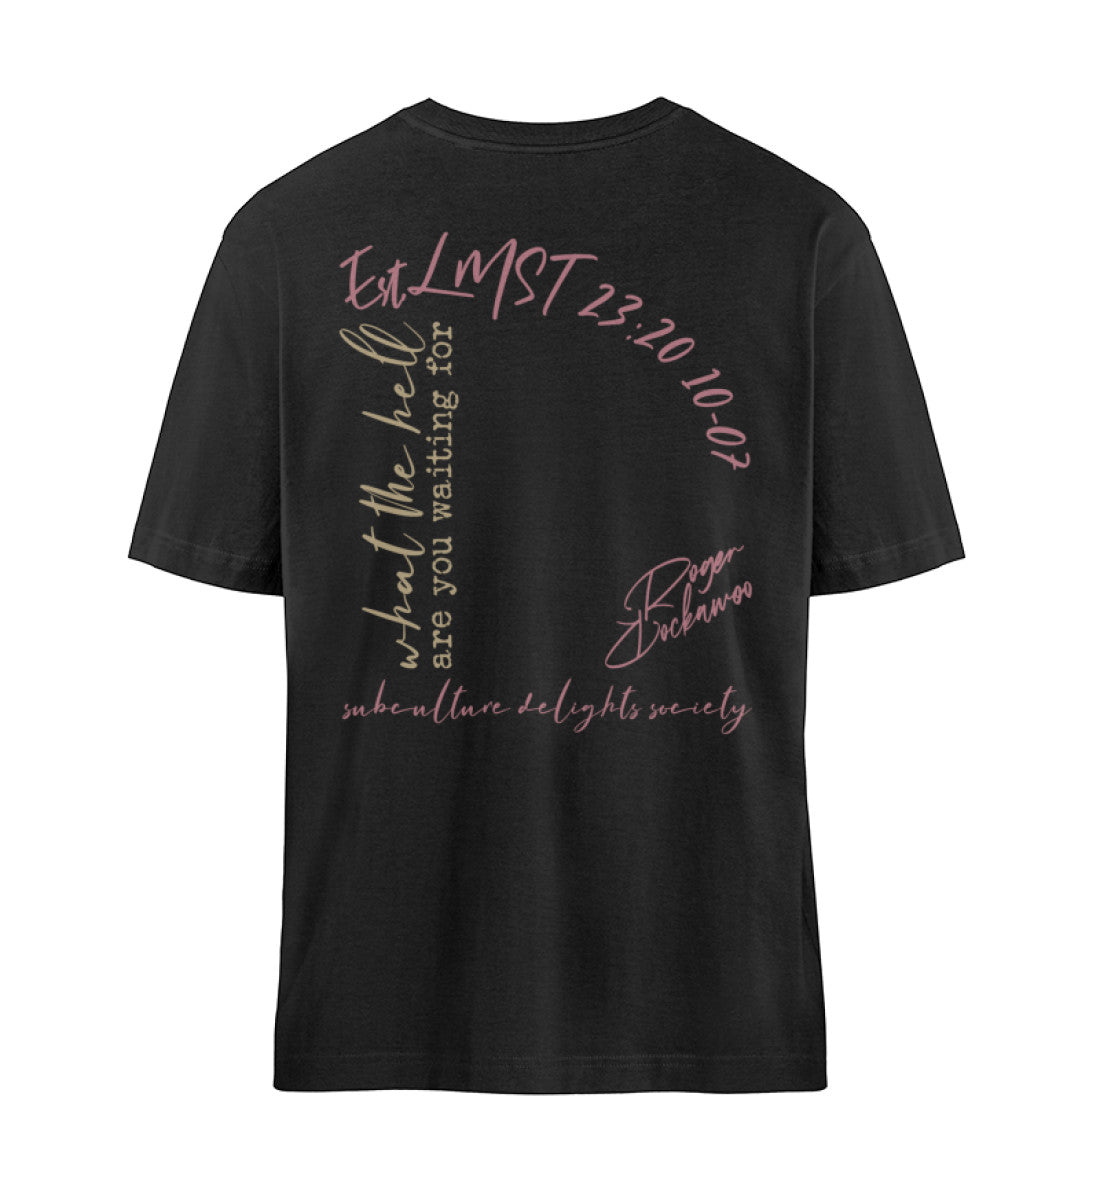 Schwarzes T-Shirt Unisex Relaxed Fit für Frauen und Männer bedruckt mit dem Design der Roger Rockawoo Clothing Kollektion what the hell are you waiting for